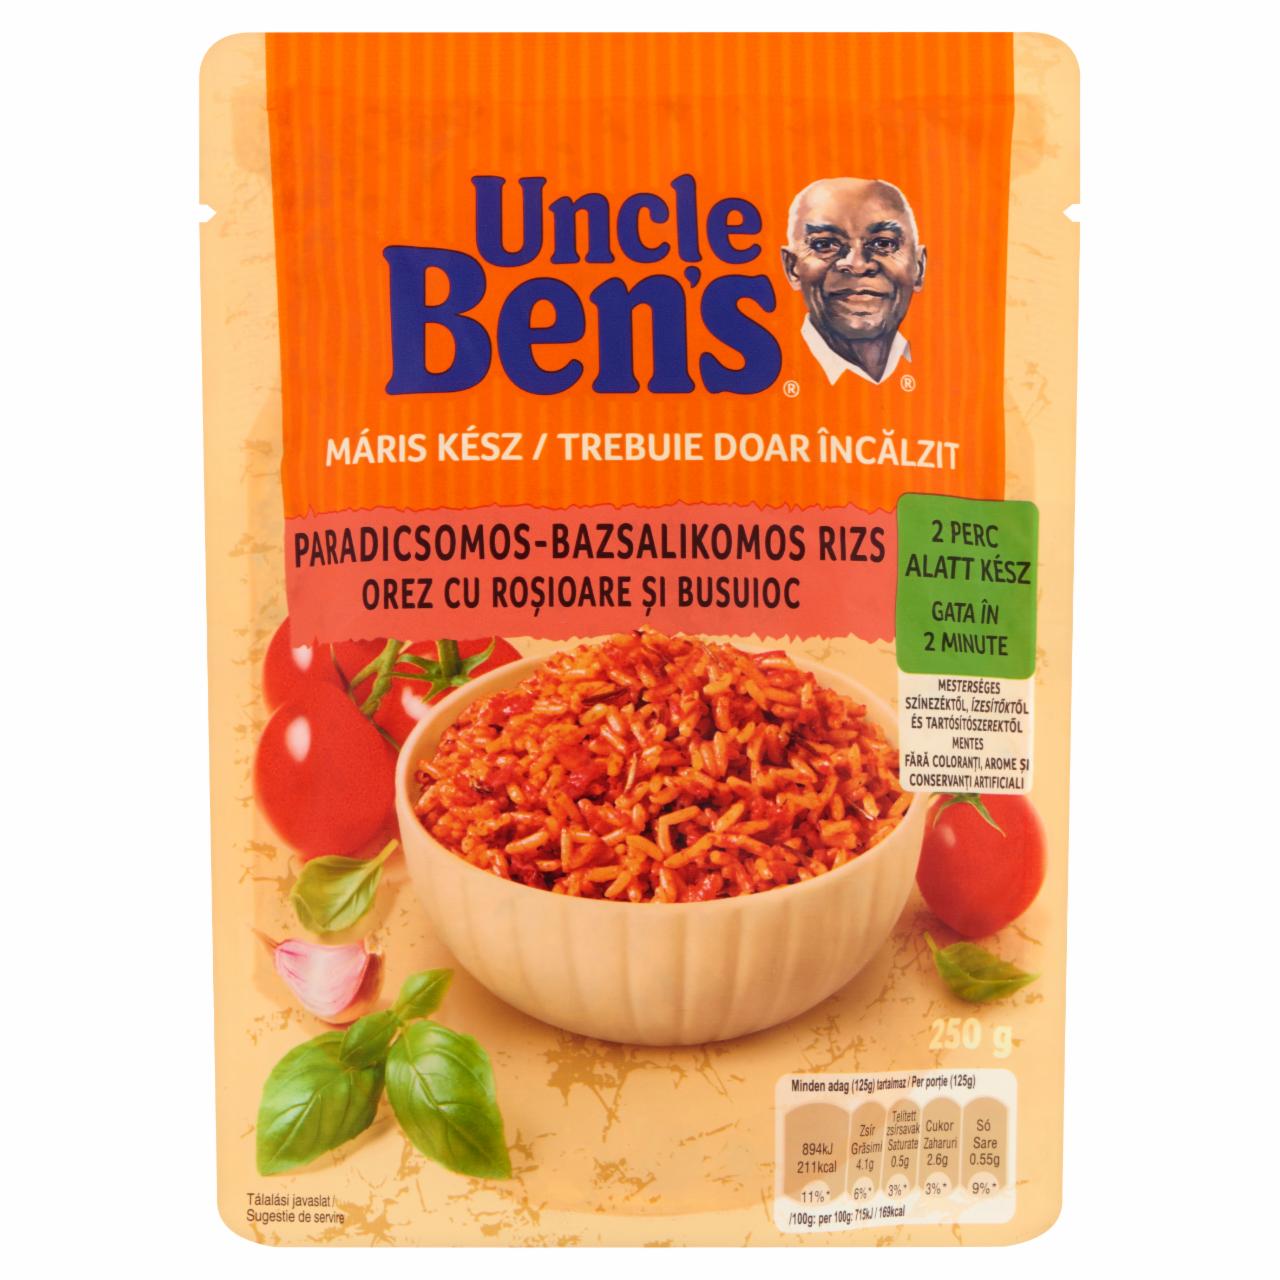 Képek - Uncle Ben's előfőzött paradicsomos-bazsalikomos rizs 250 g